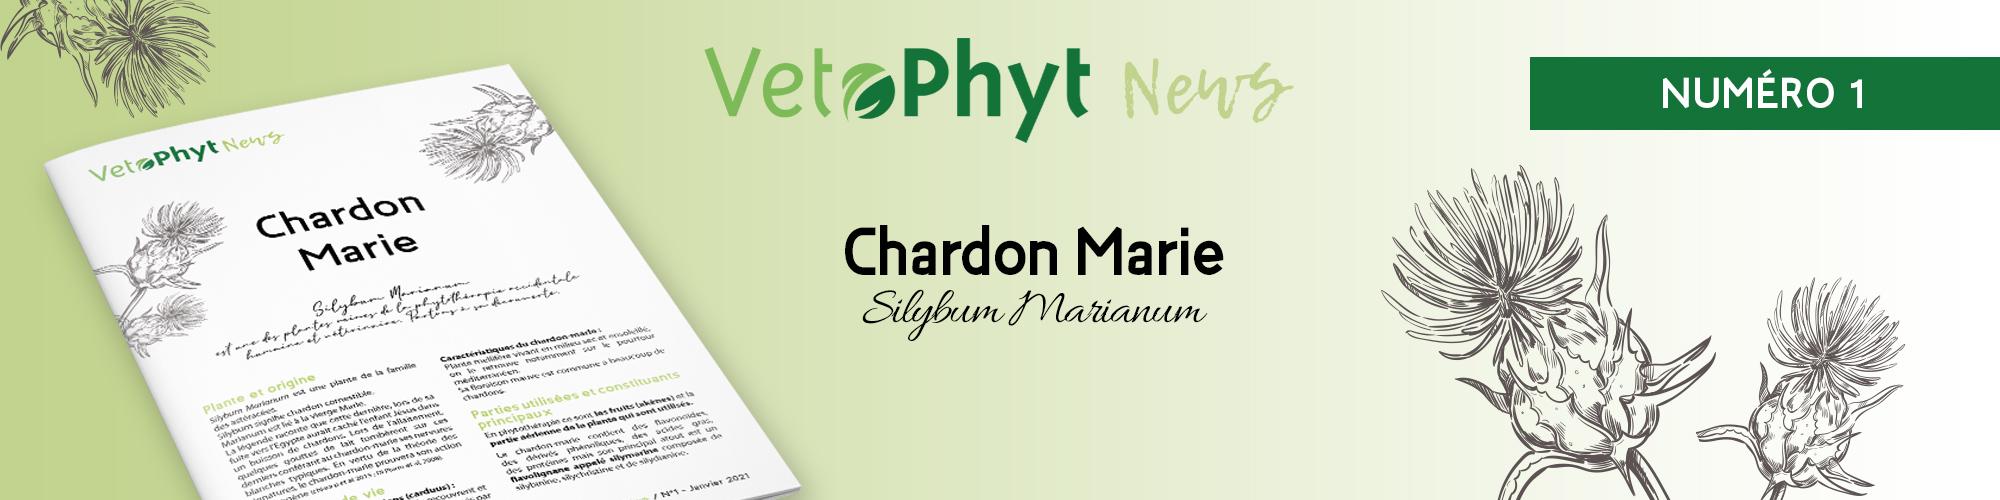 Chardon Marie Vetophyt